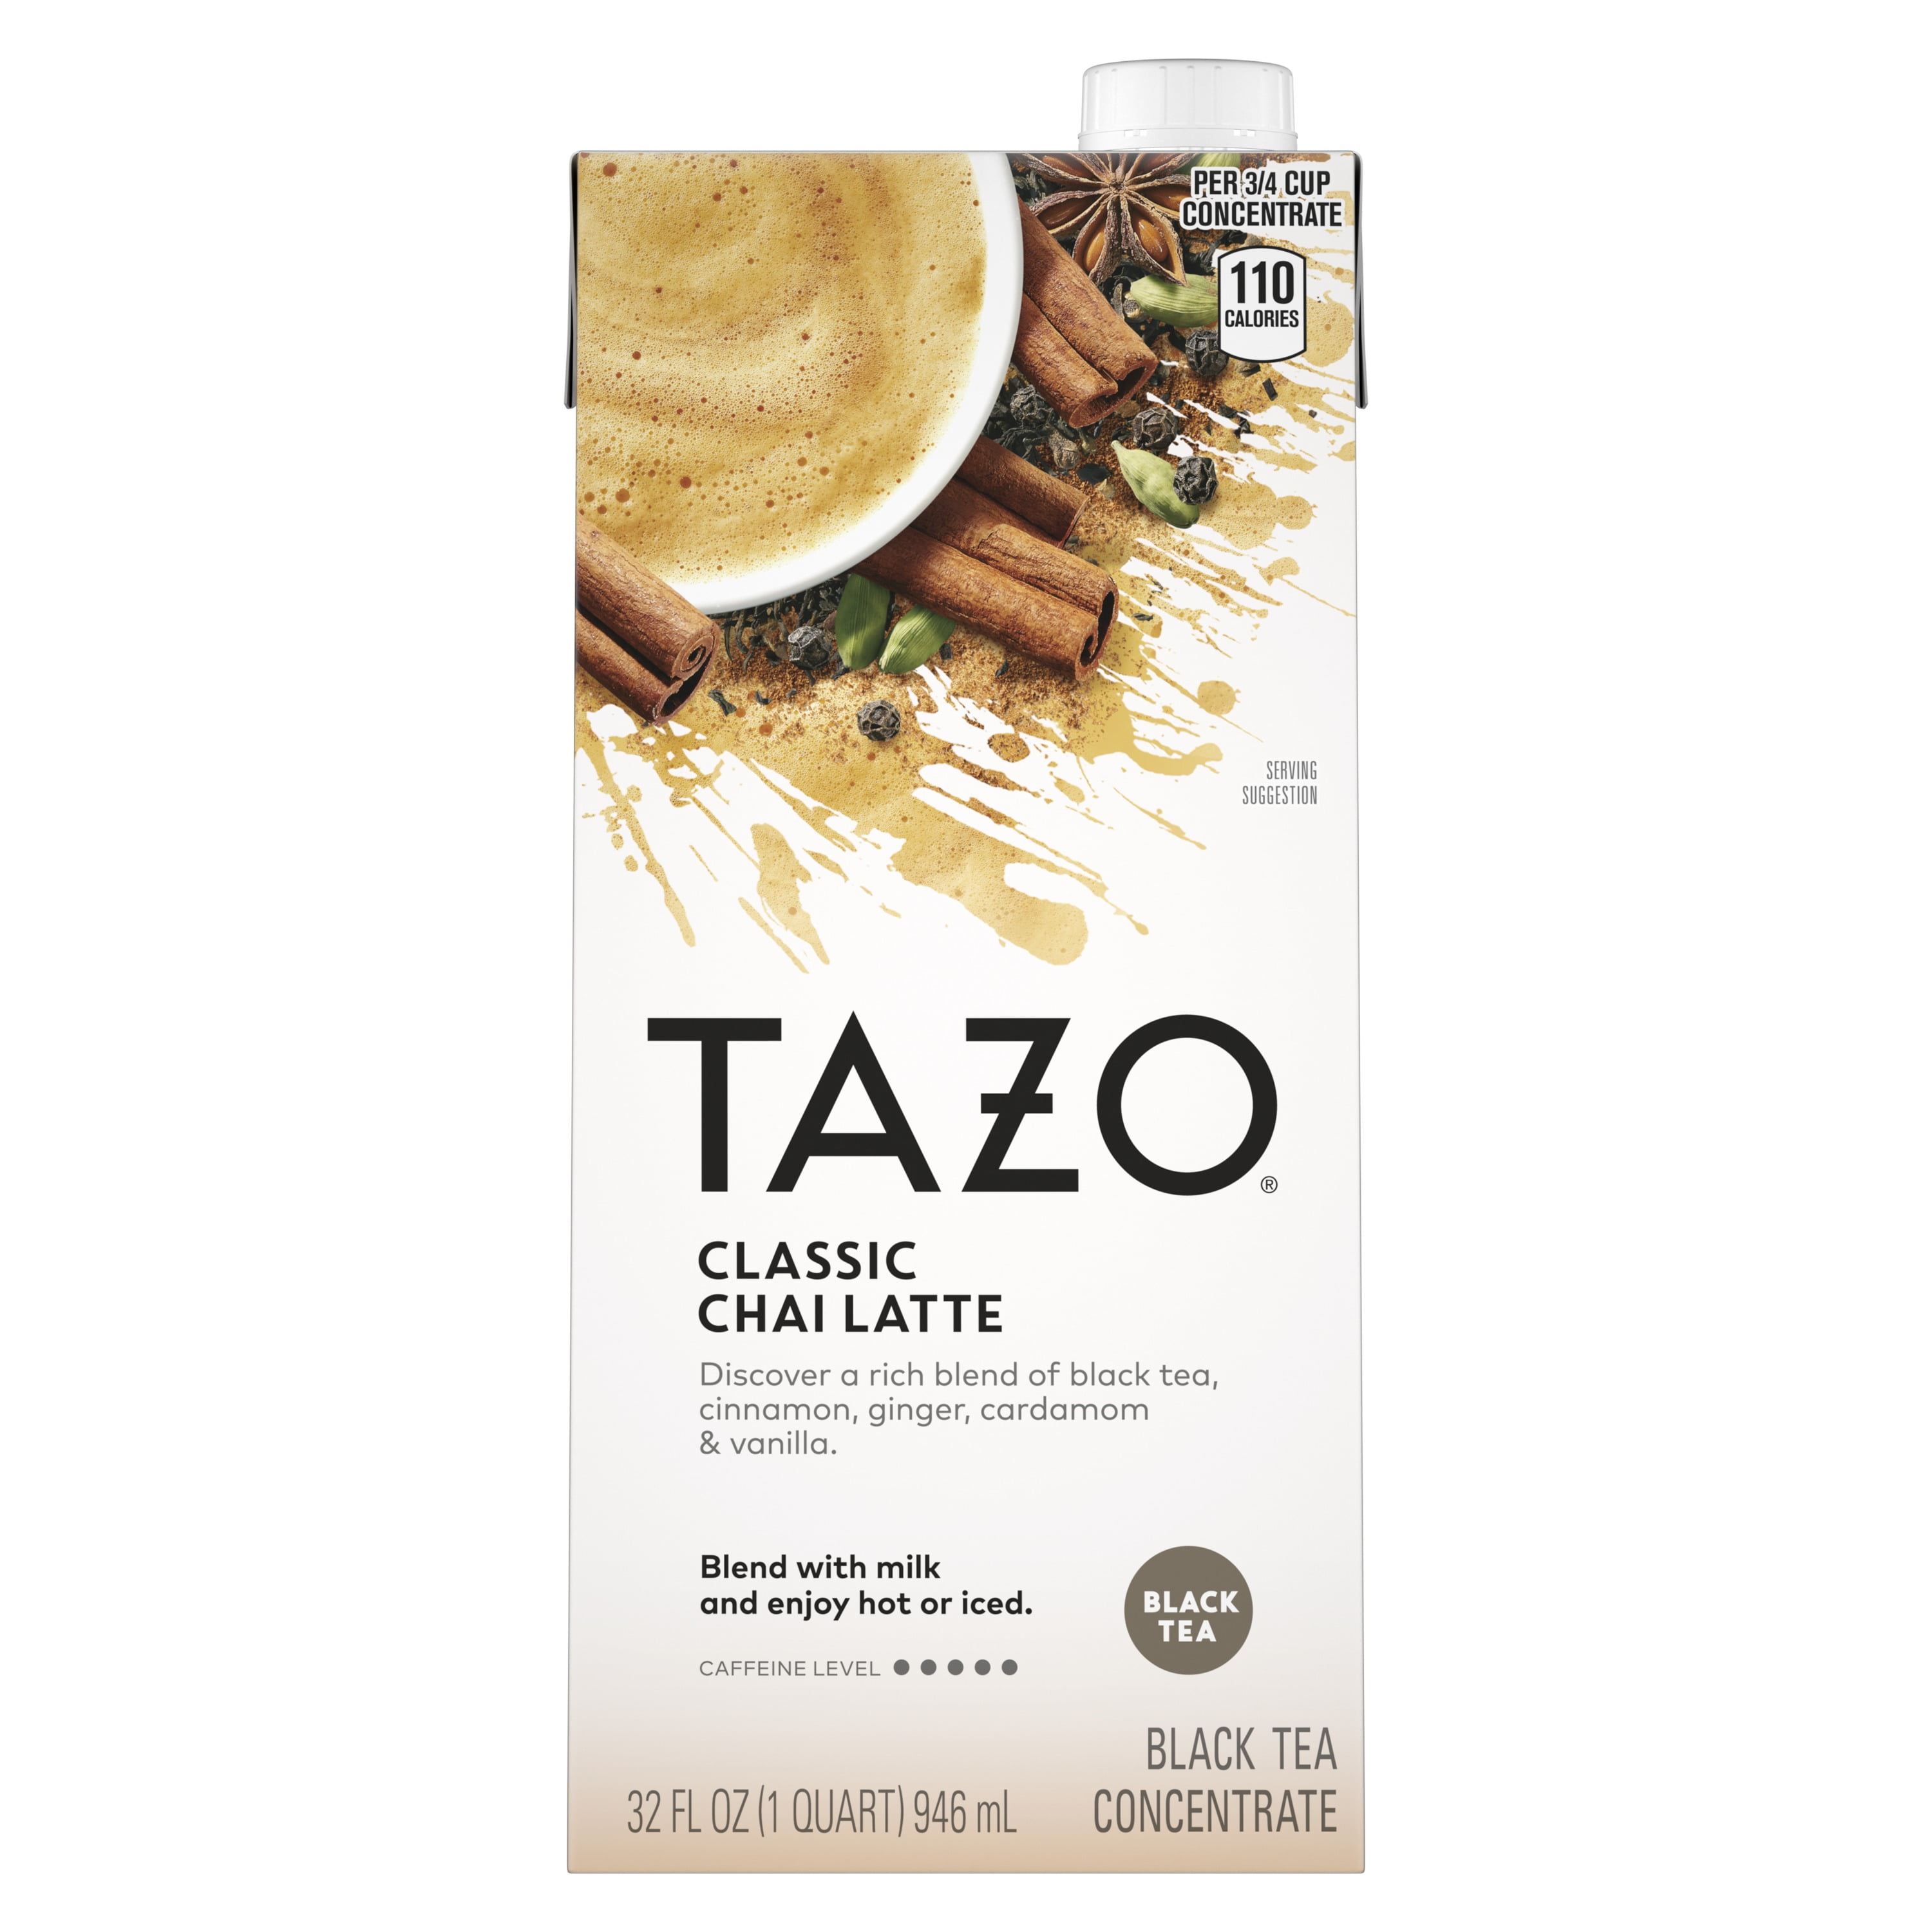 TAZO Classic Chai Latte Iced Tea Concentrate Black Tea, Caffeinated, Tea Bags 32 oz Carton